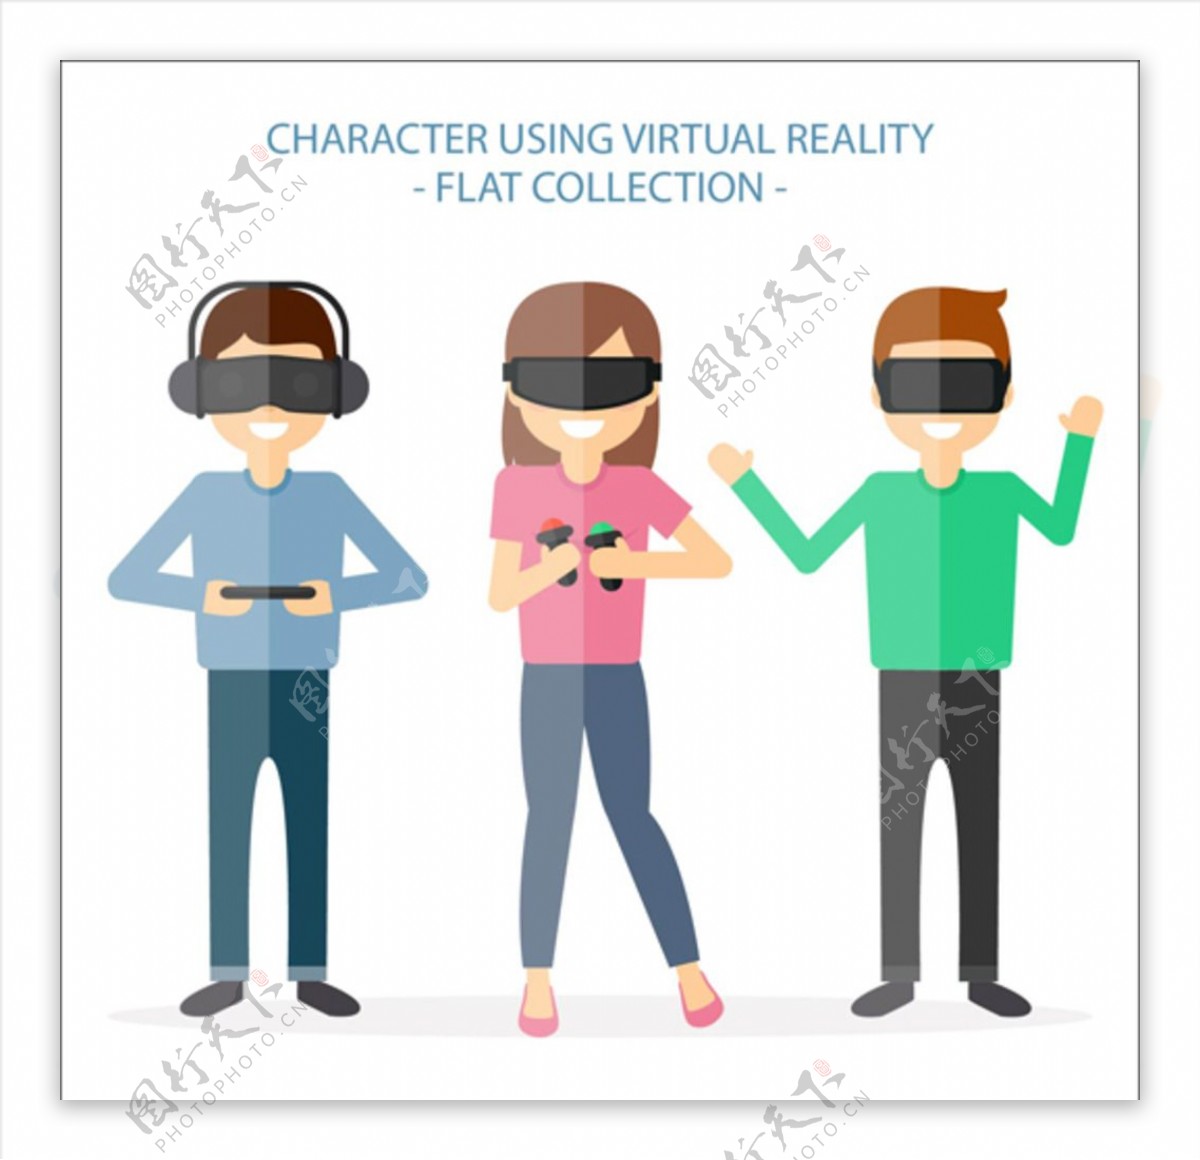 戴VR虚拟现实眼镜的孩子